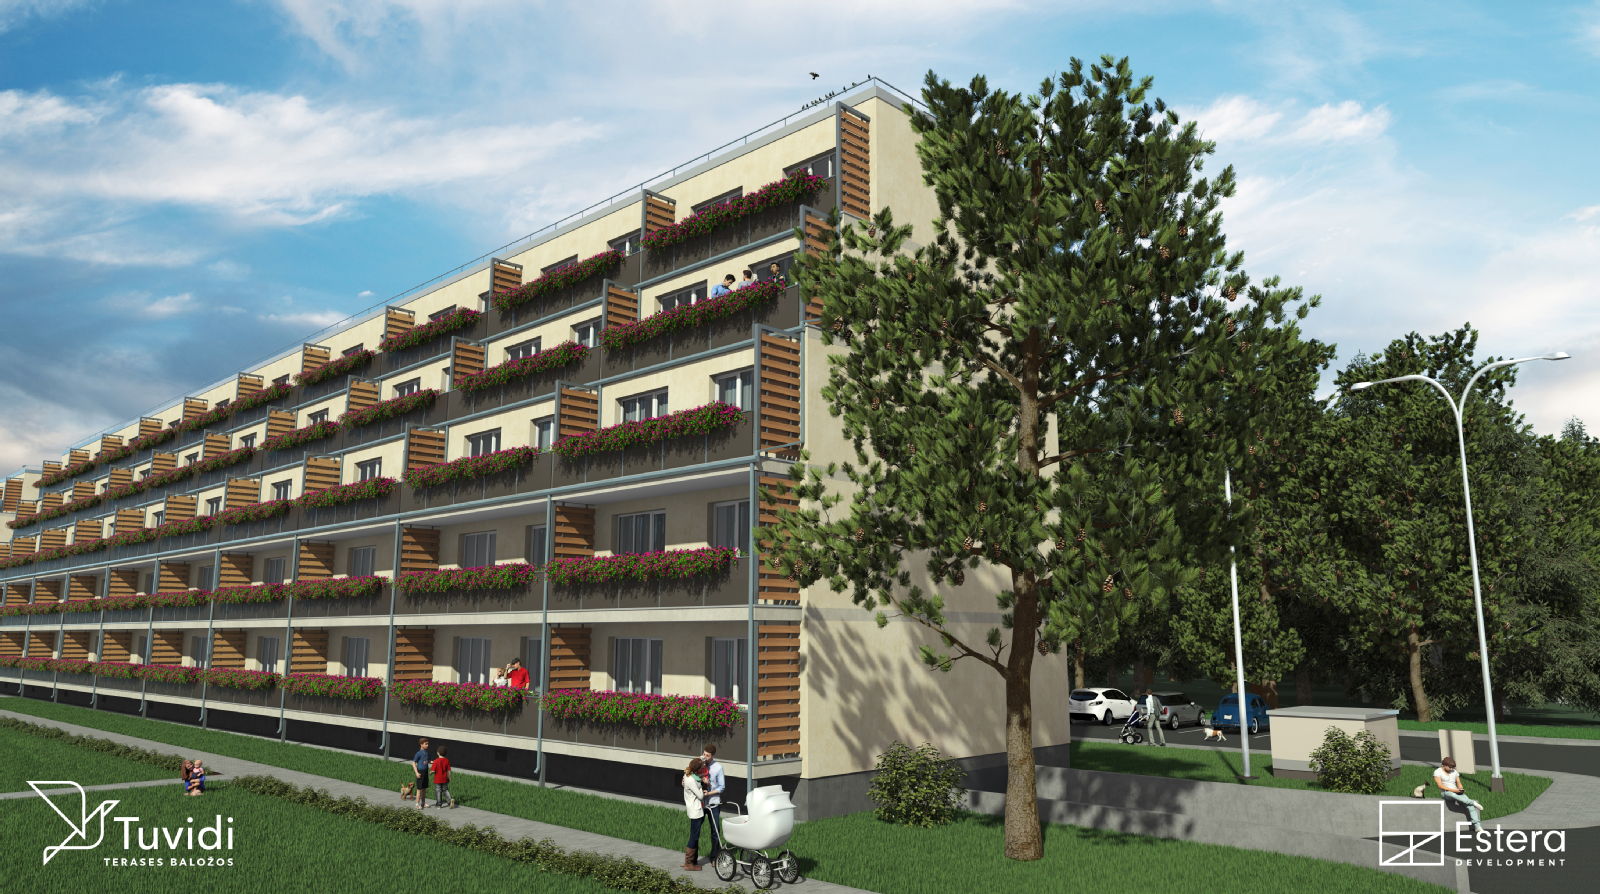 Estera Development uzsāk pārdošanu jaunajā dzīvokļu projektā Baložos – Tuvidi - Nekustamo īpašumu ziņas - City24.lv nekustamo īpašumu sludinājumu portāls